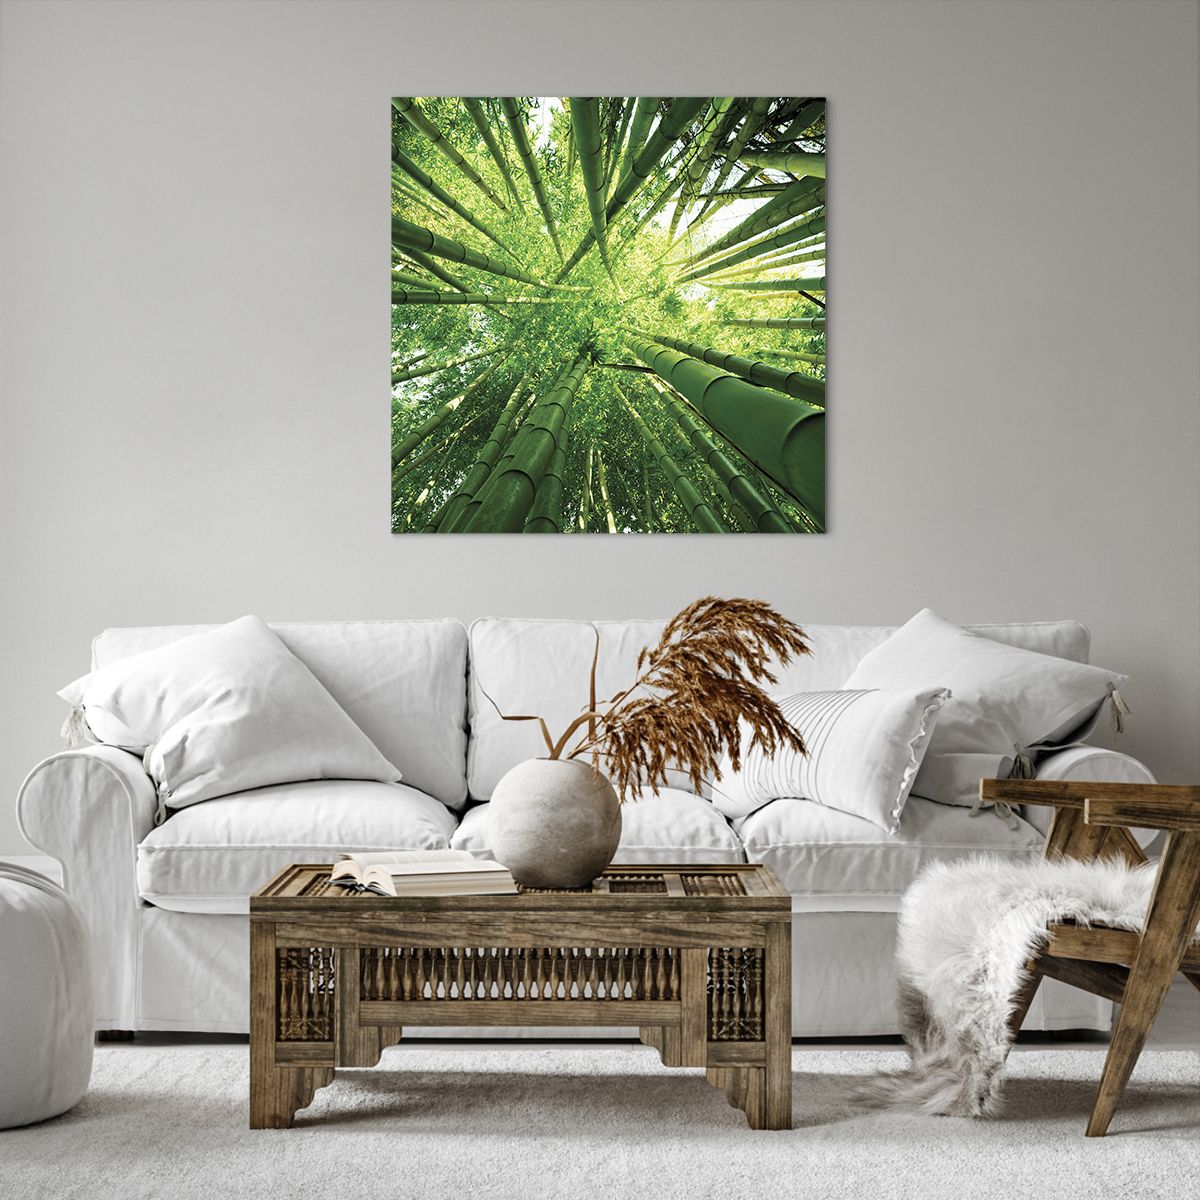 Obrazy na płótnie Las Bambusowy, Obrazy na płótnie Dżungla, Obrazy na płótnie Bambus, Obrazy na płótnie Natura, Obrazy na płótnie Japonia